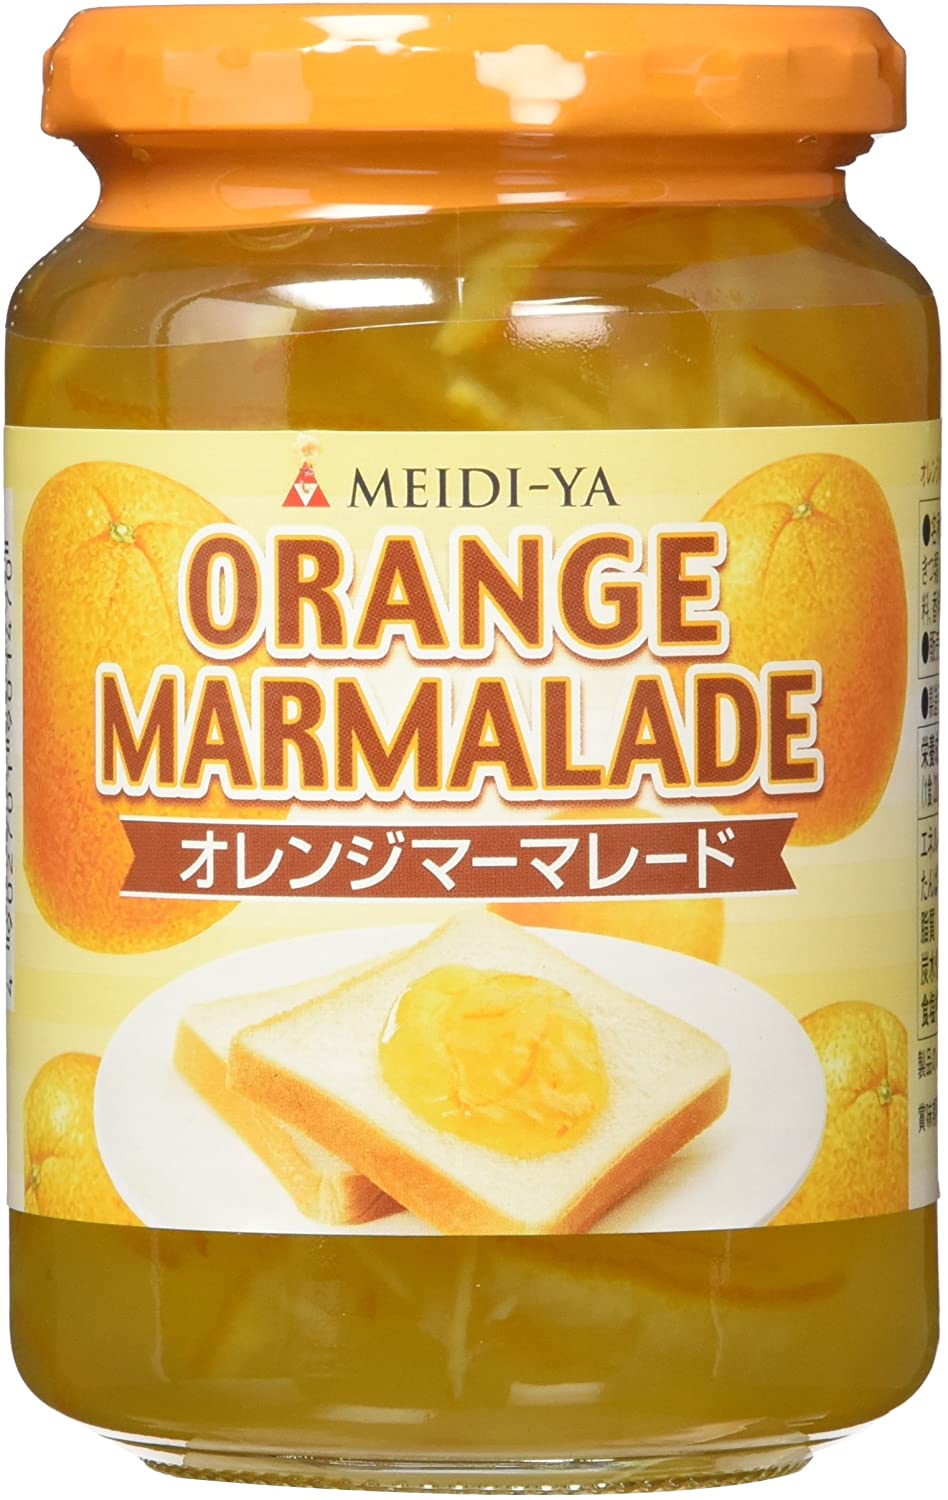 【驚きの値段】 明治屋 ファミリータイプジャム 390g4個 オレンジママレード ジャム